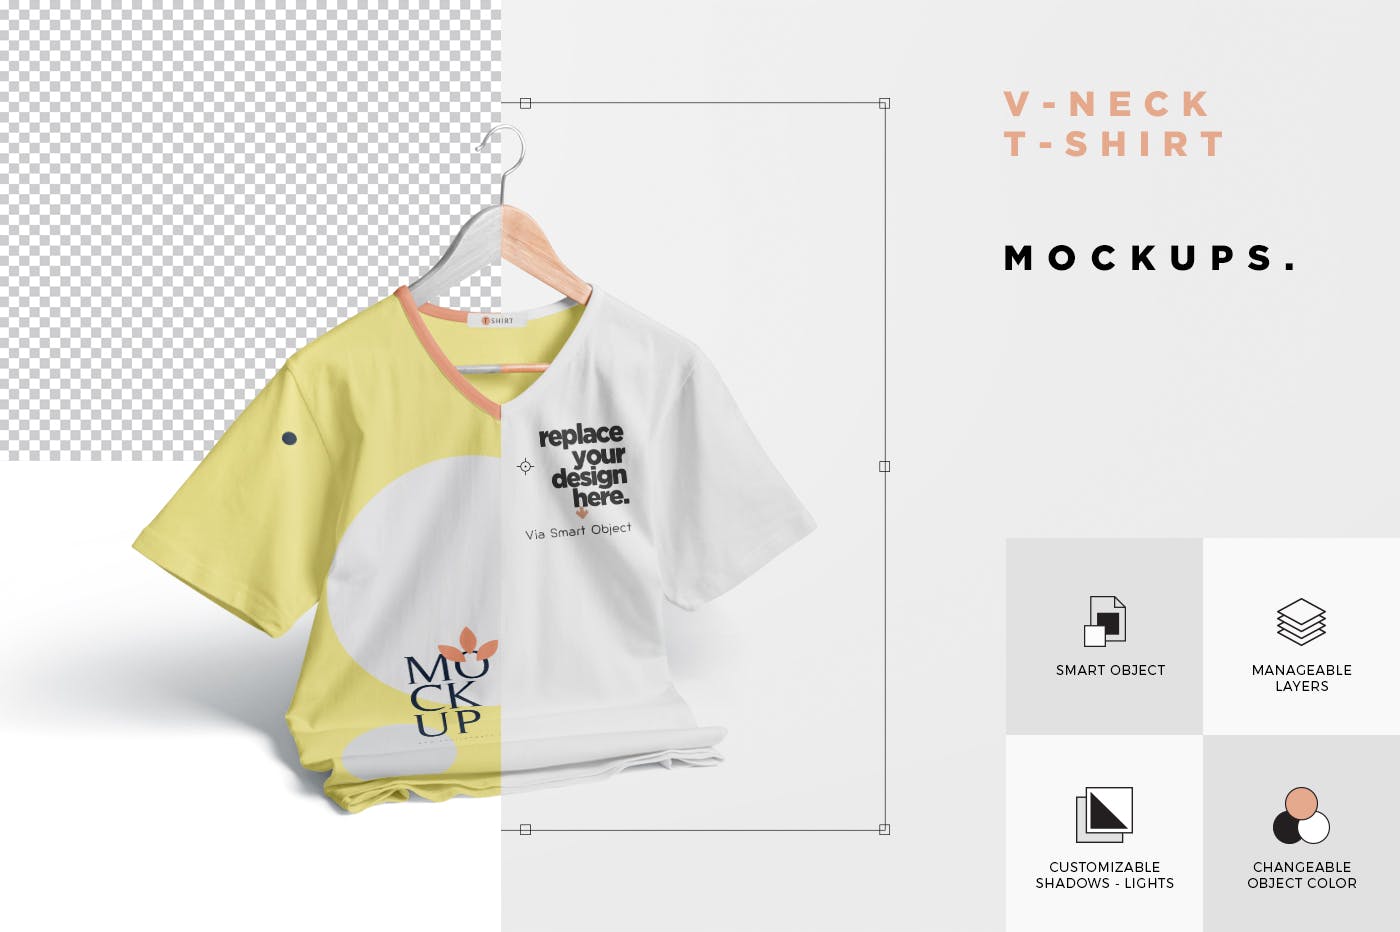 V领T恤服装印花设计效果图样机 V-Neck T-Shirt Mockups插图(5)